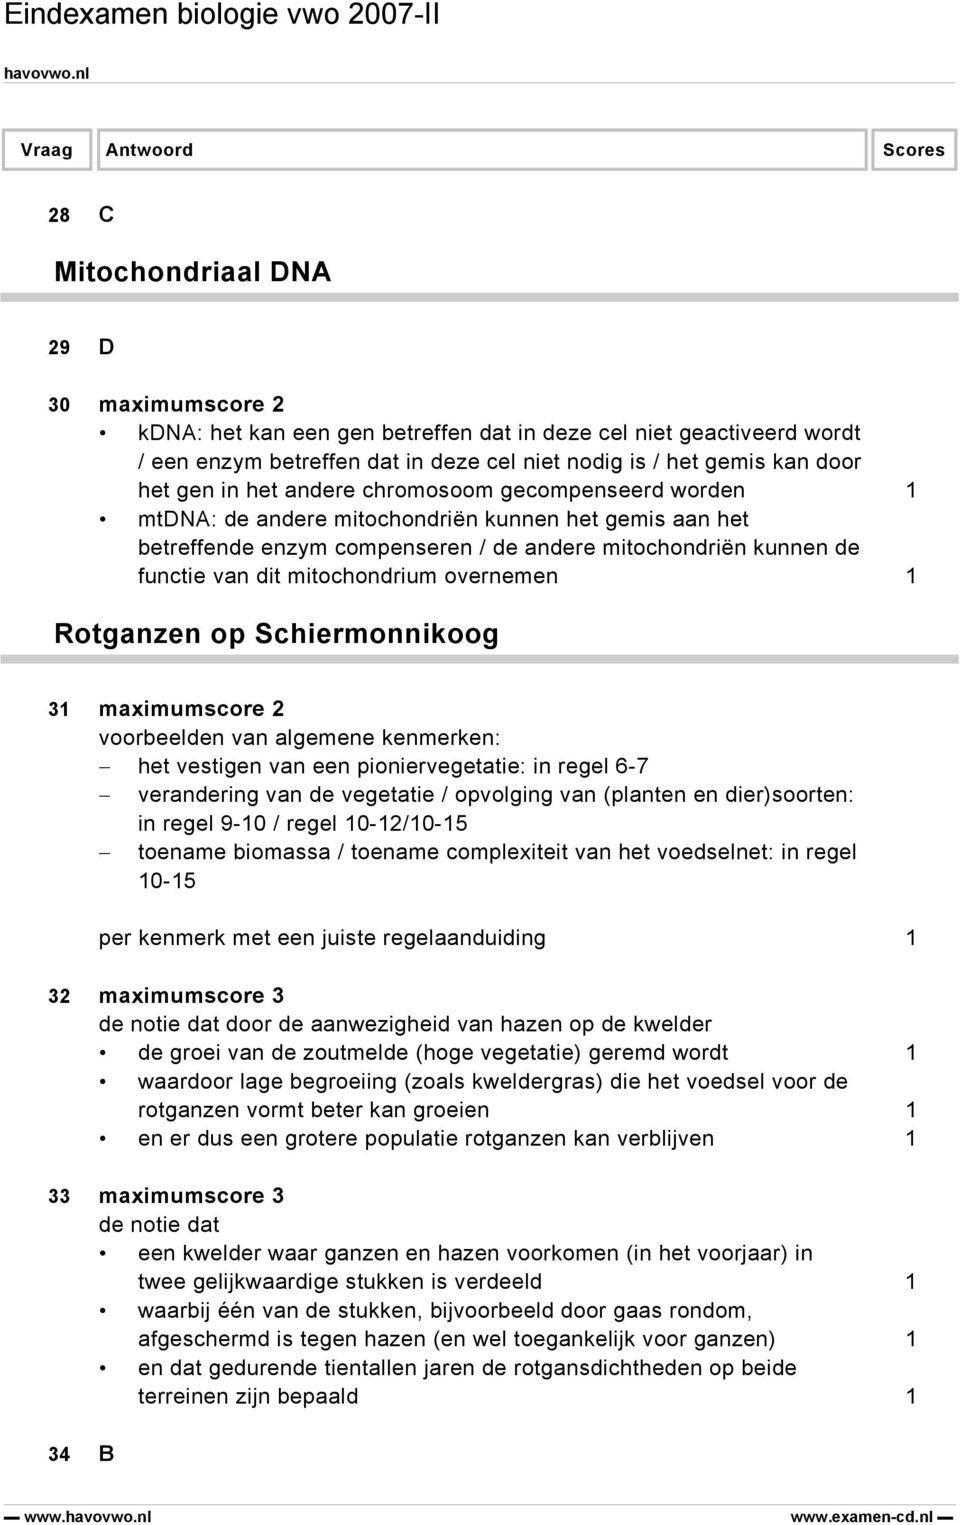 overnemen 1 Rotganzen op Schiermonnikoog 31 maximumscore 2 voorbeelden van algemene kenmerken: het vestigen van een pioniervegetatie: in regel 6-7 verandering van de vegetatie / opvolging van